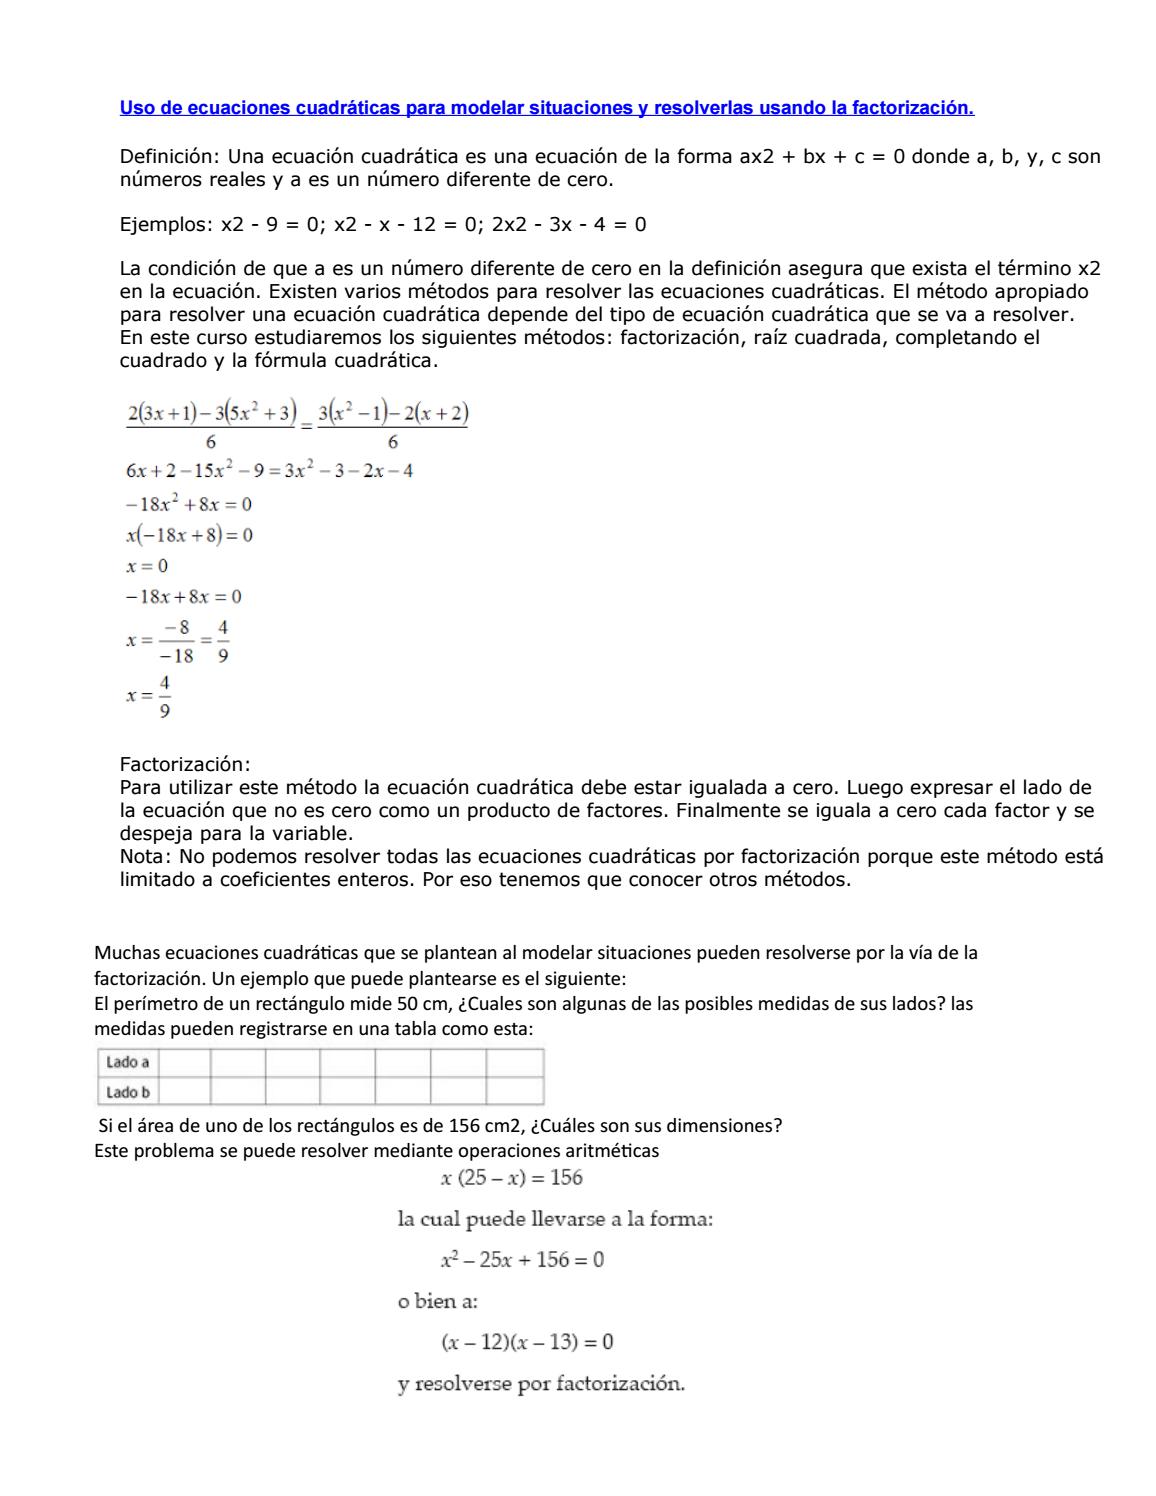 9.2: Resolver ecuaciones cuadráticas usando la propiedad de raíz cuadrada